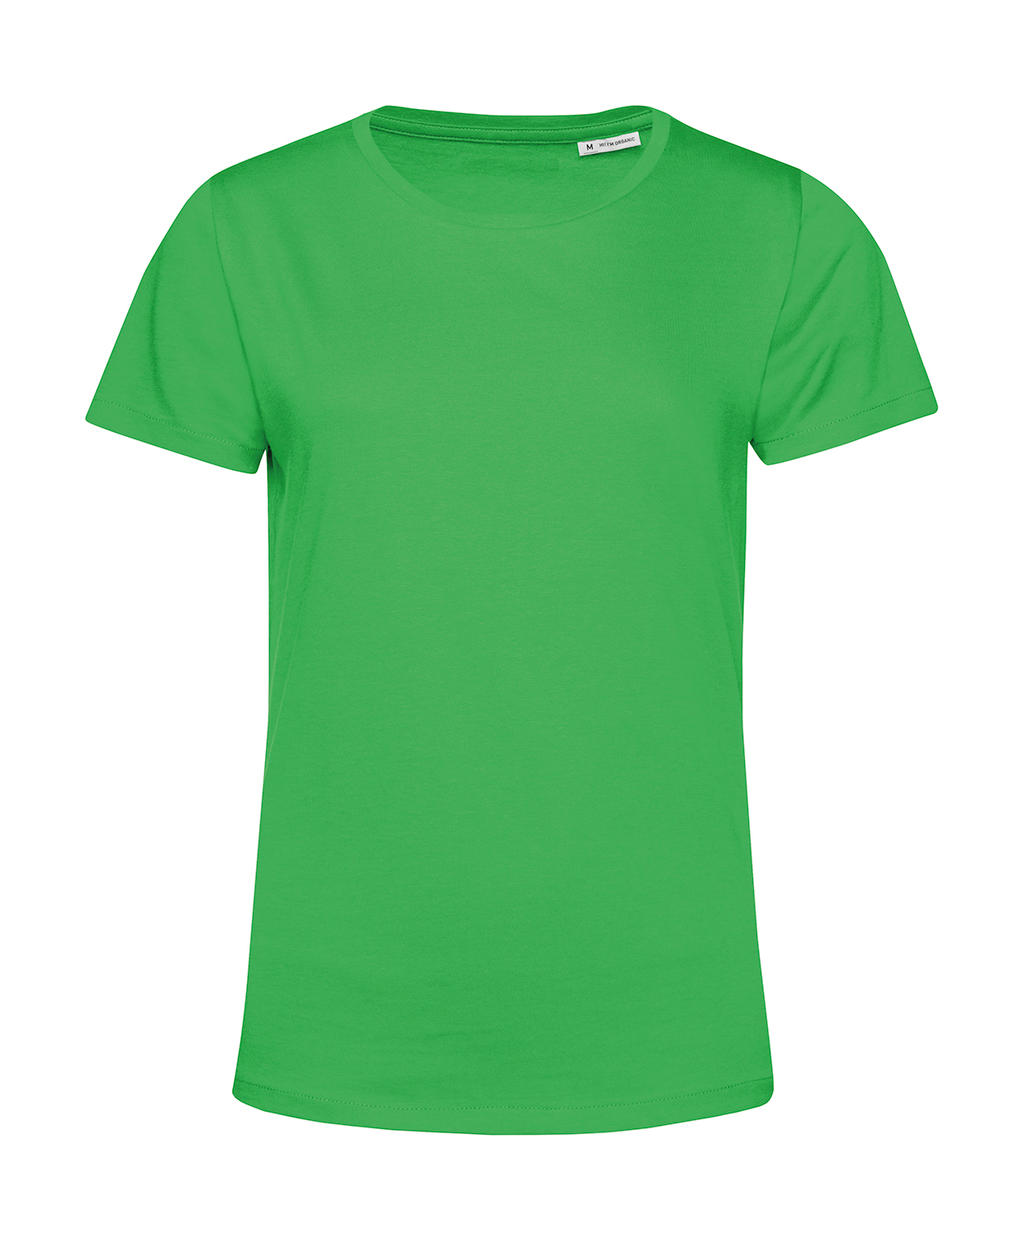 Tričko dámské BC Organic Inspire E150 - zelené, XXL